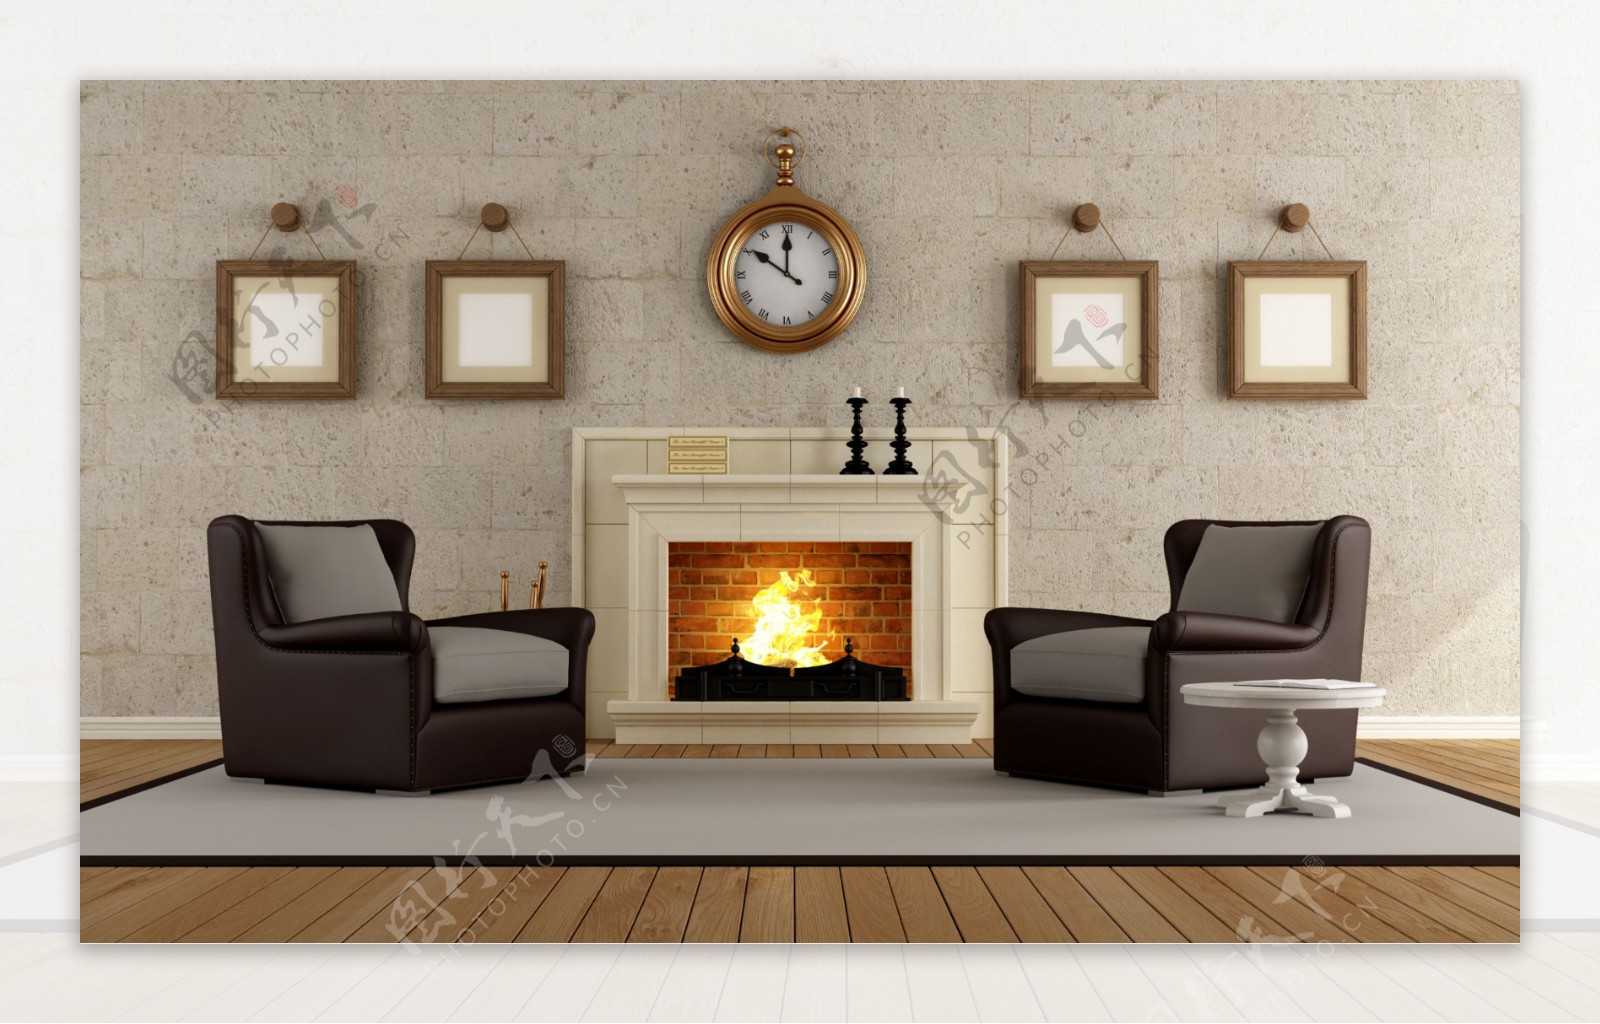 美式古朴客厅壁炉室内装修效果图图片素材-编号28958922-图行天下